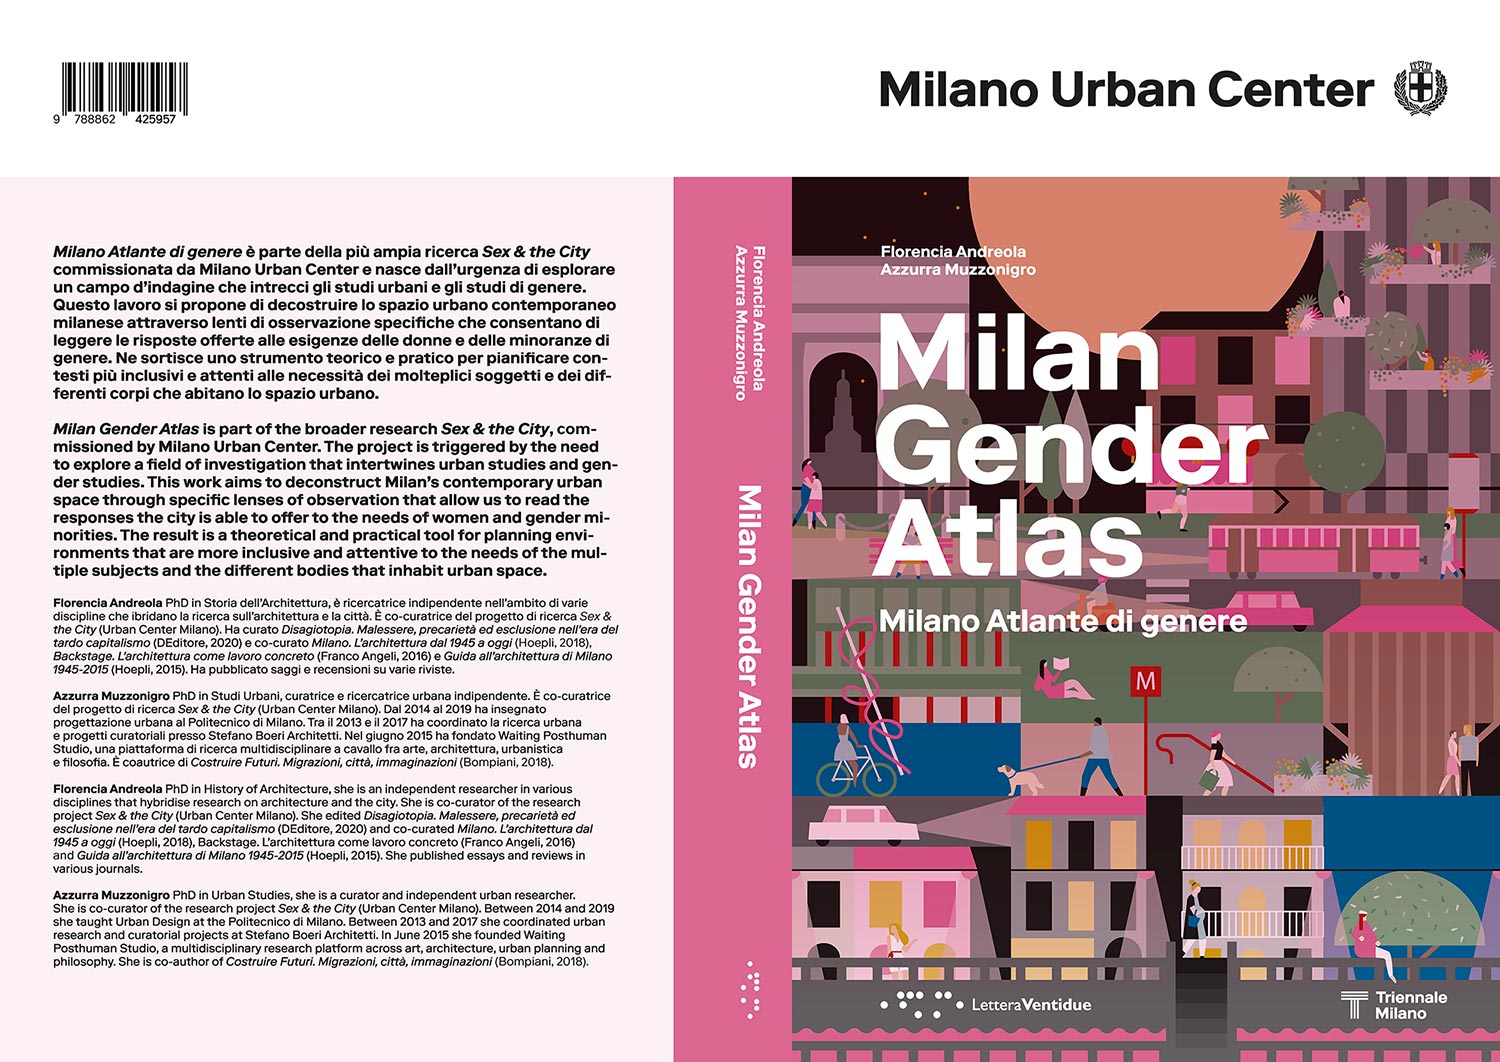 Milan Gender Atlas